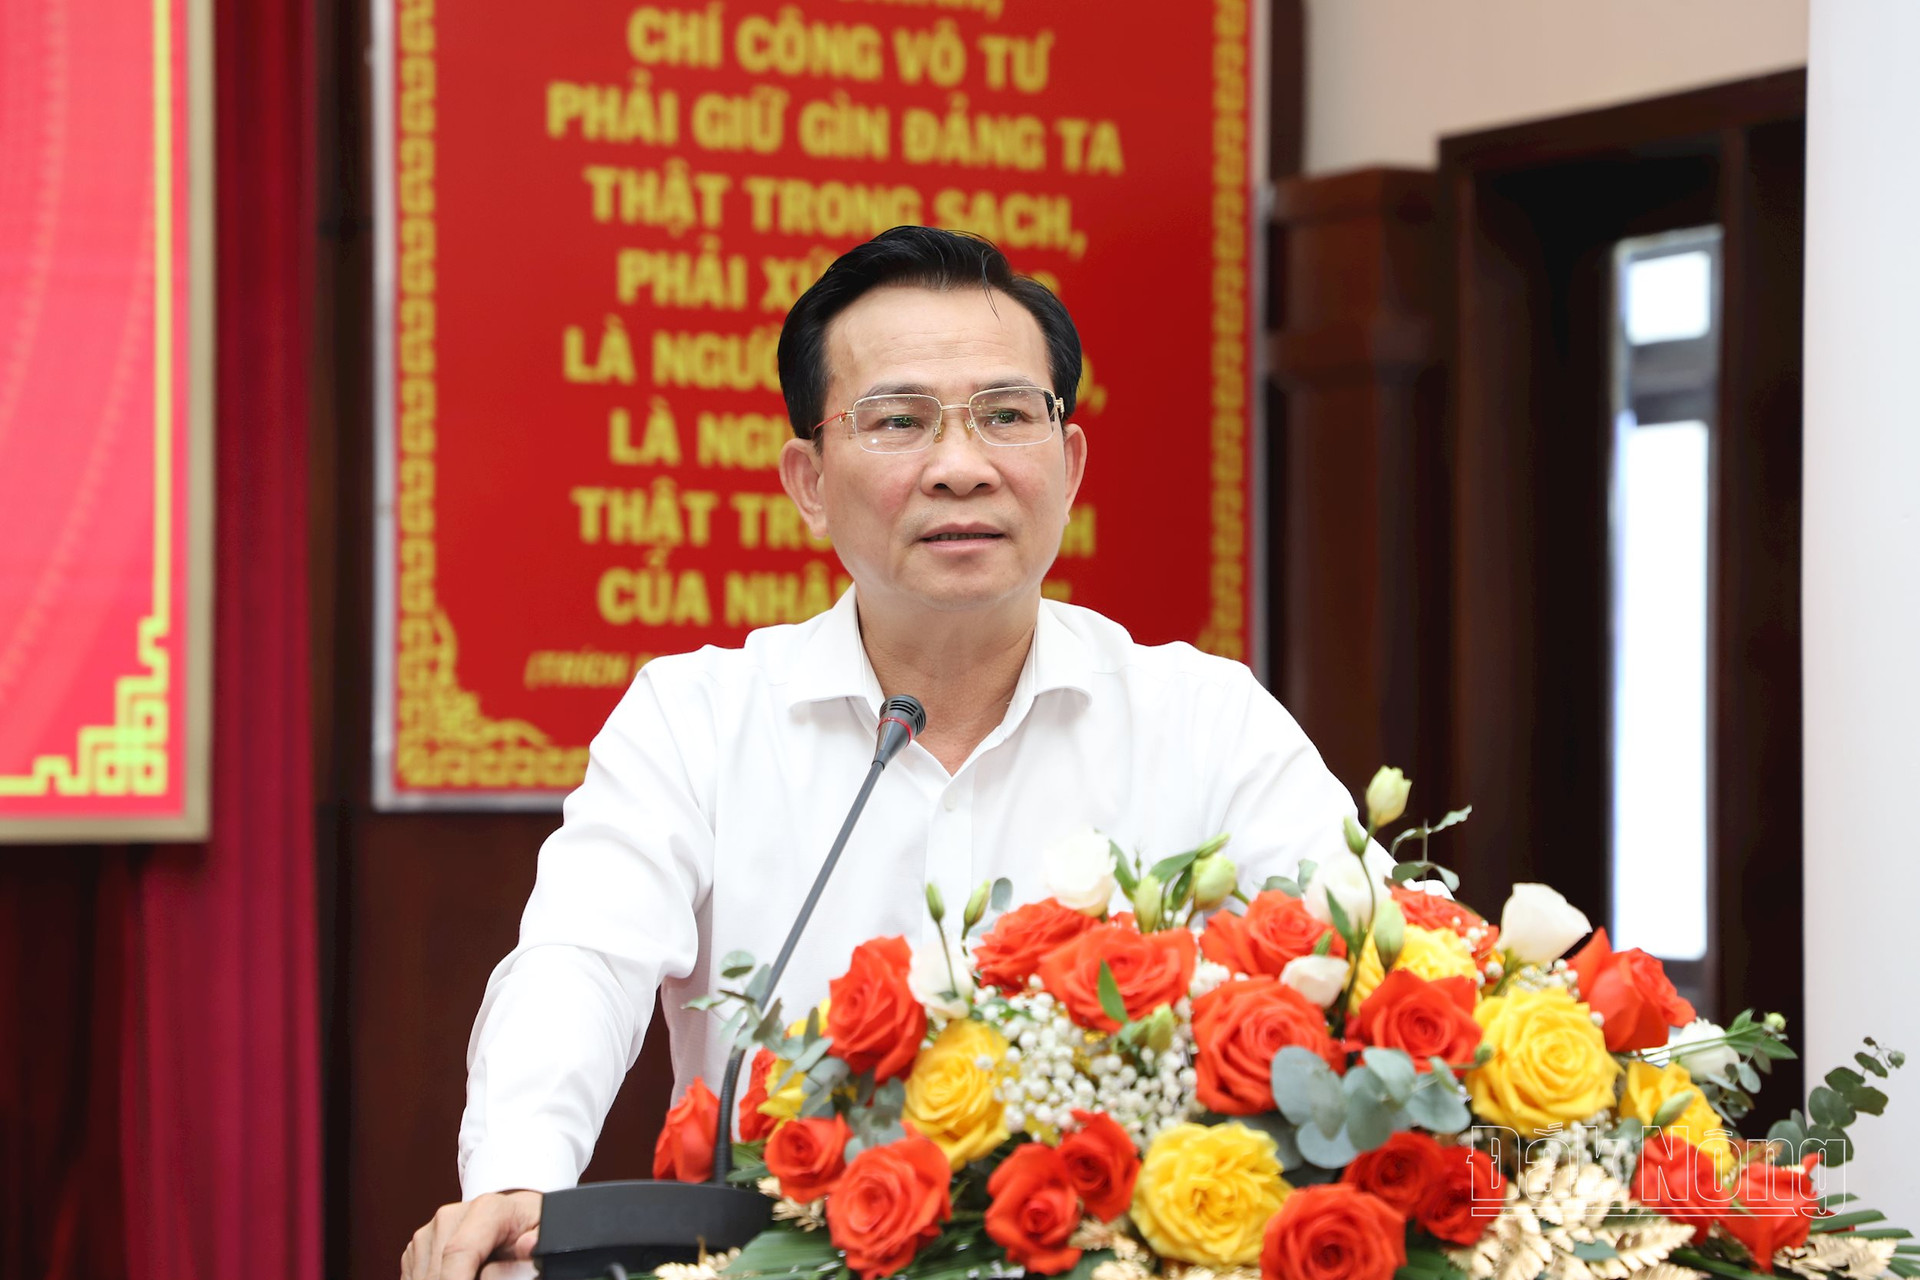 Đồng chí Hồ Văn Mười, Phó Bí thư Tỉnh ủy, Chủ tịch UBND tỉnh Đắk Nông giải trình, làm rõ một số nội dung kinh tế - xã hội mà các đại biểu ý kiến